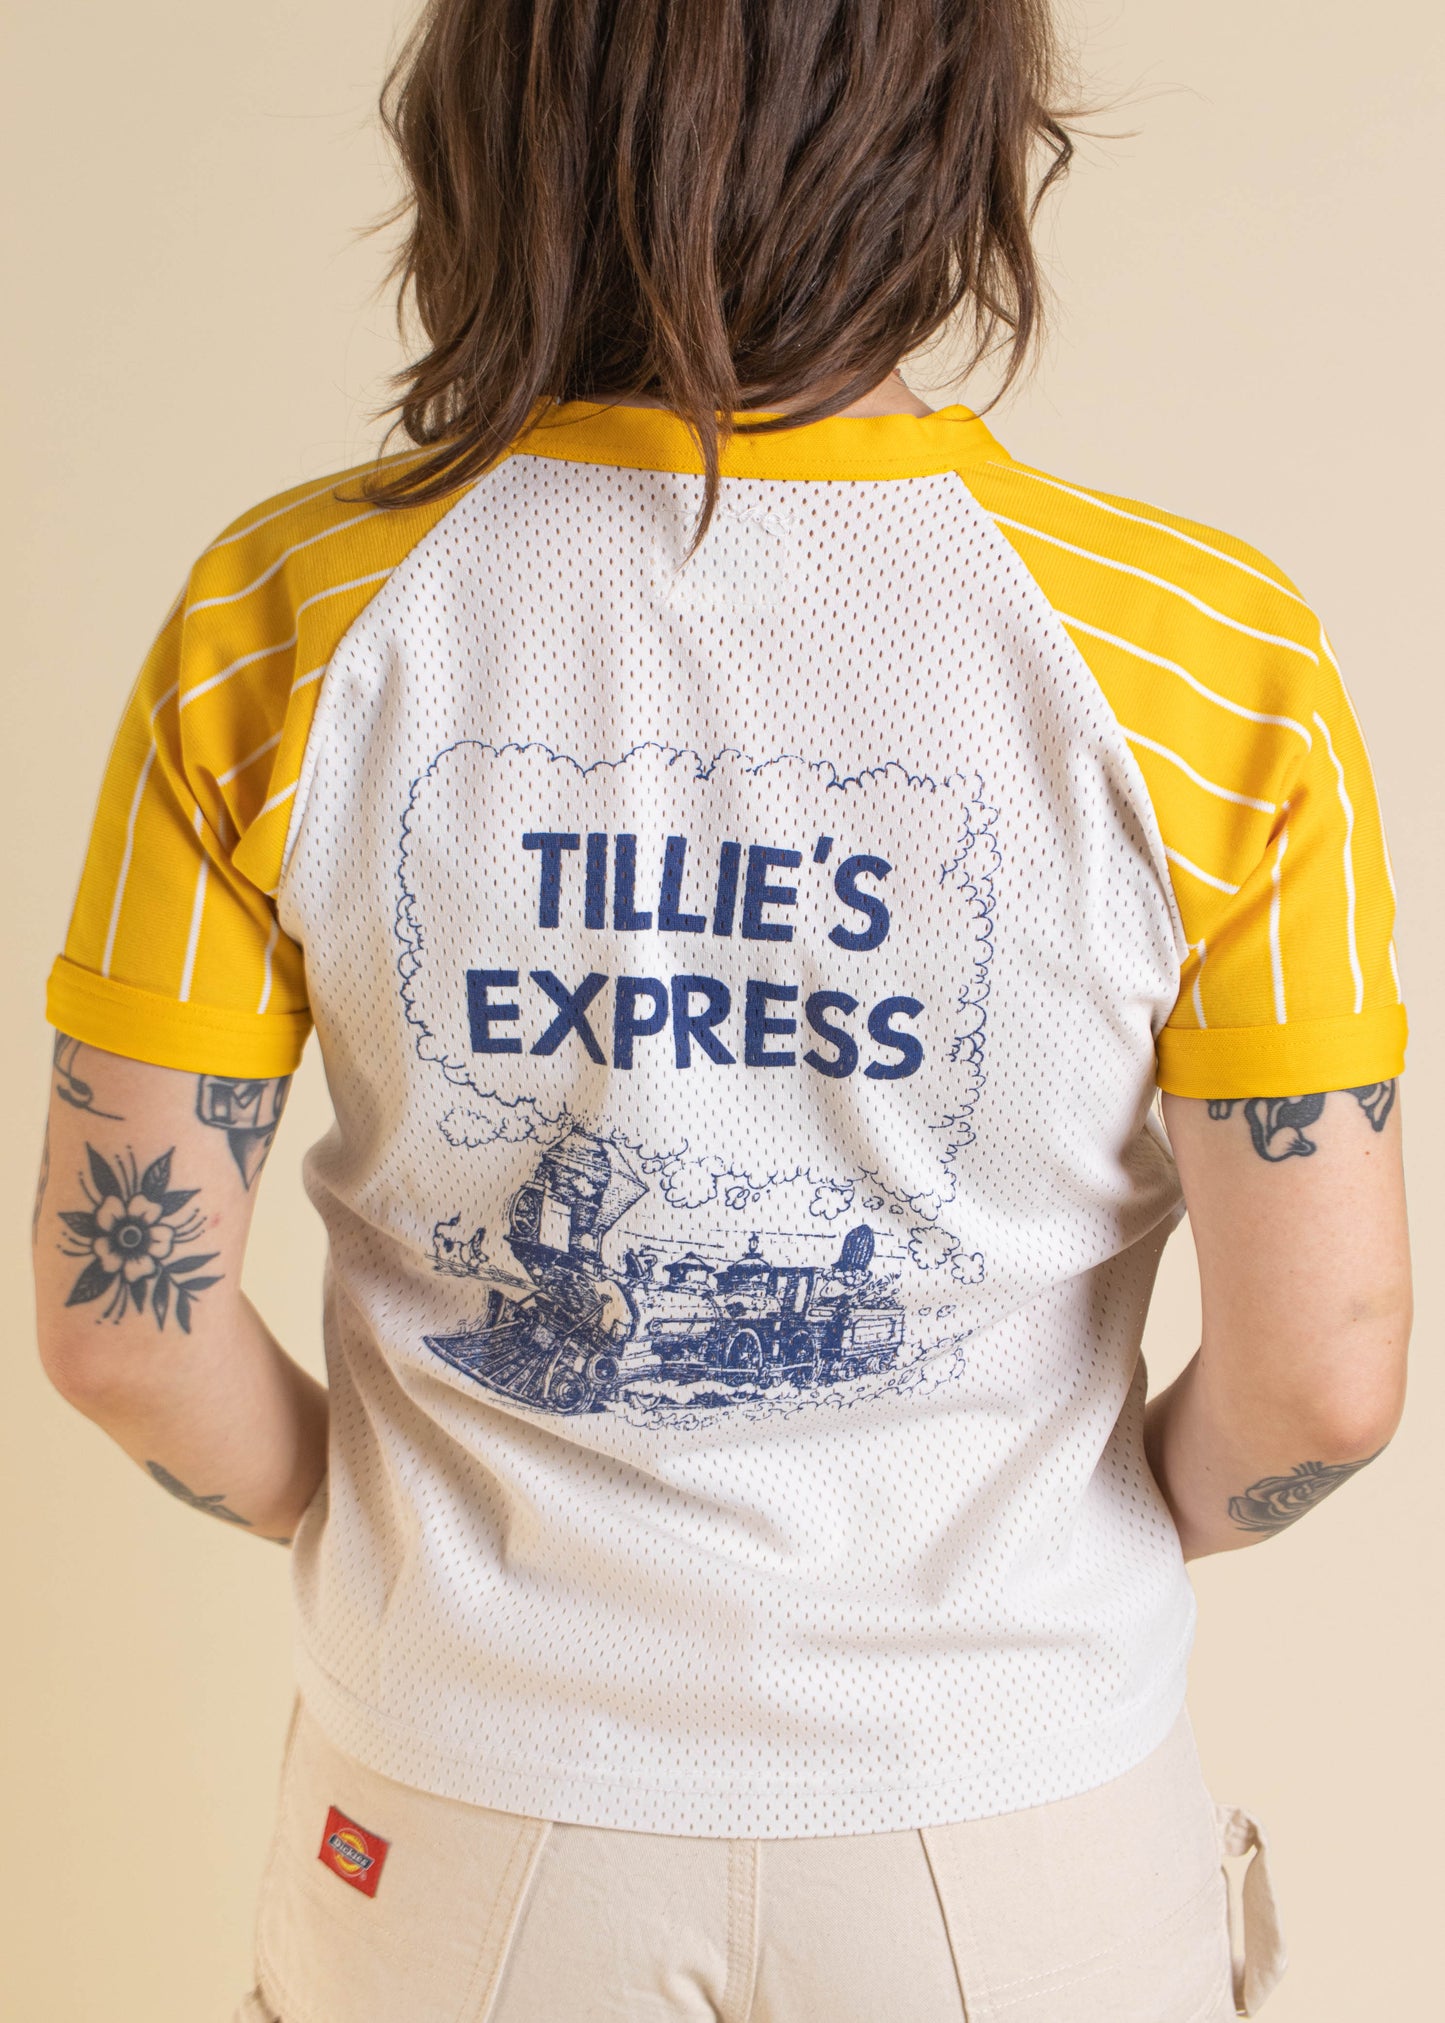 1980s Tillie's Express Mesh Baseball Jersey T-Shirt Size